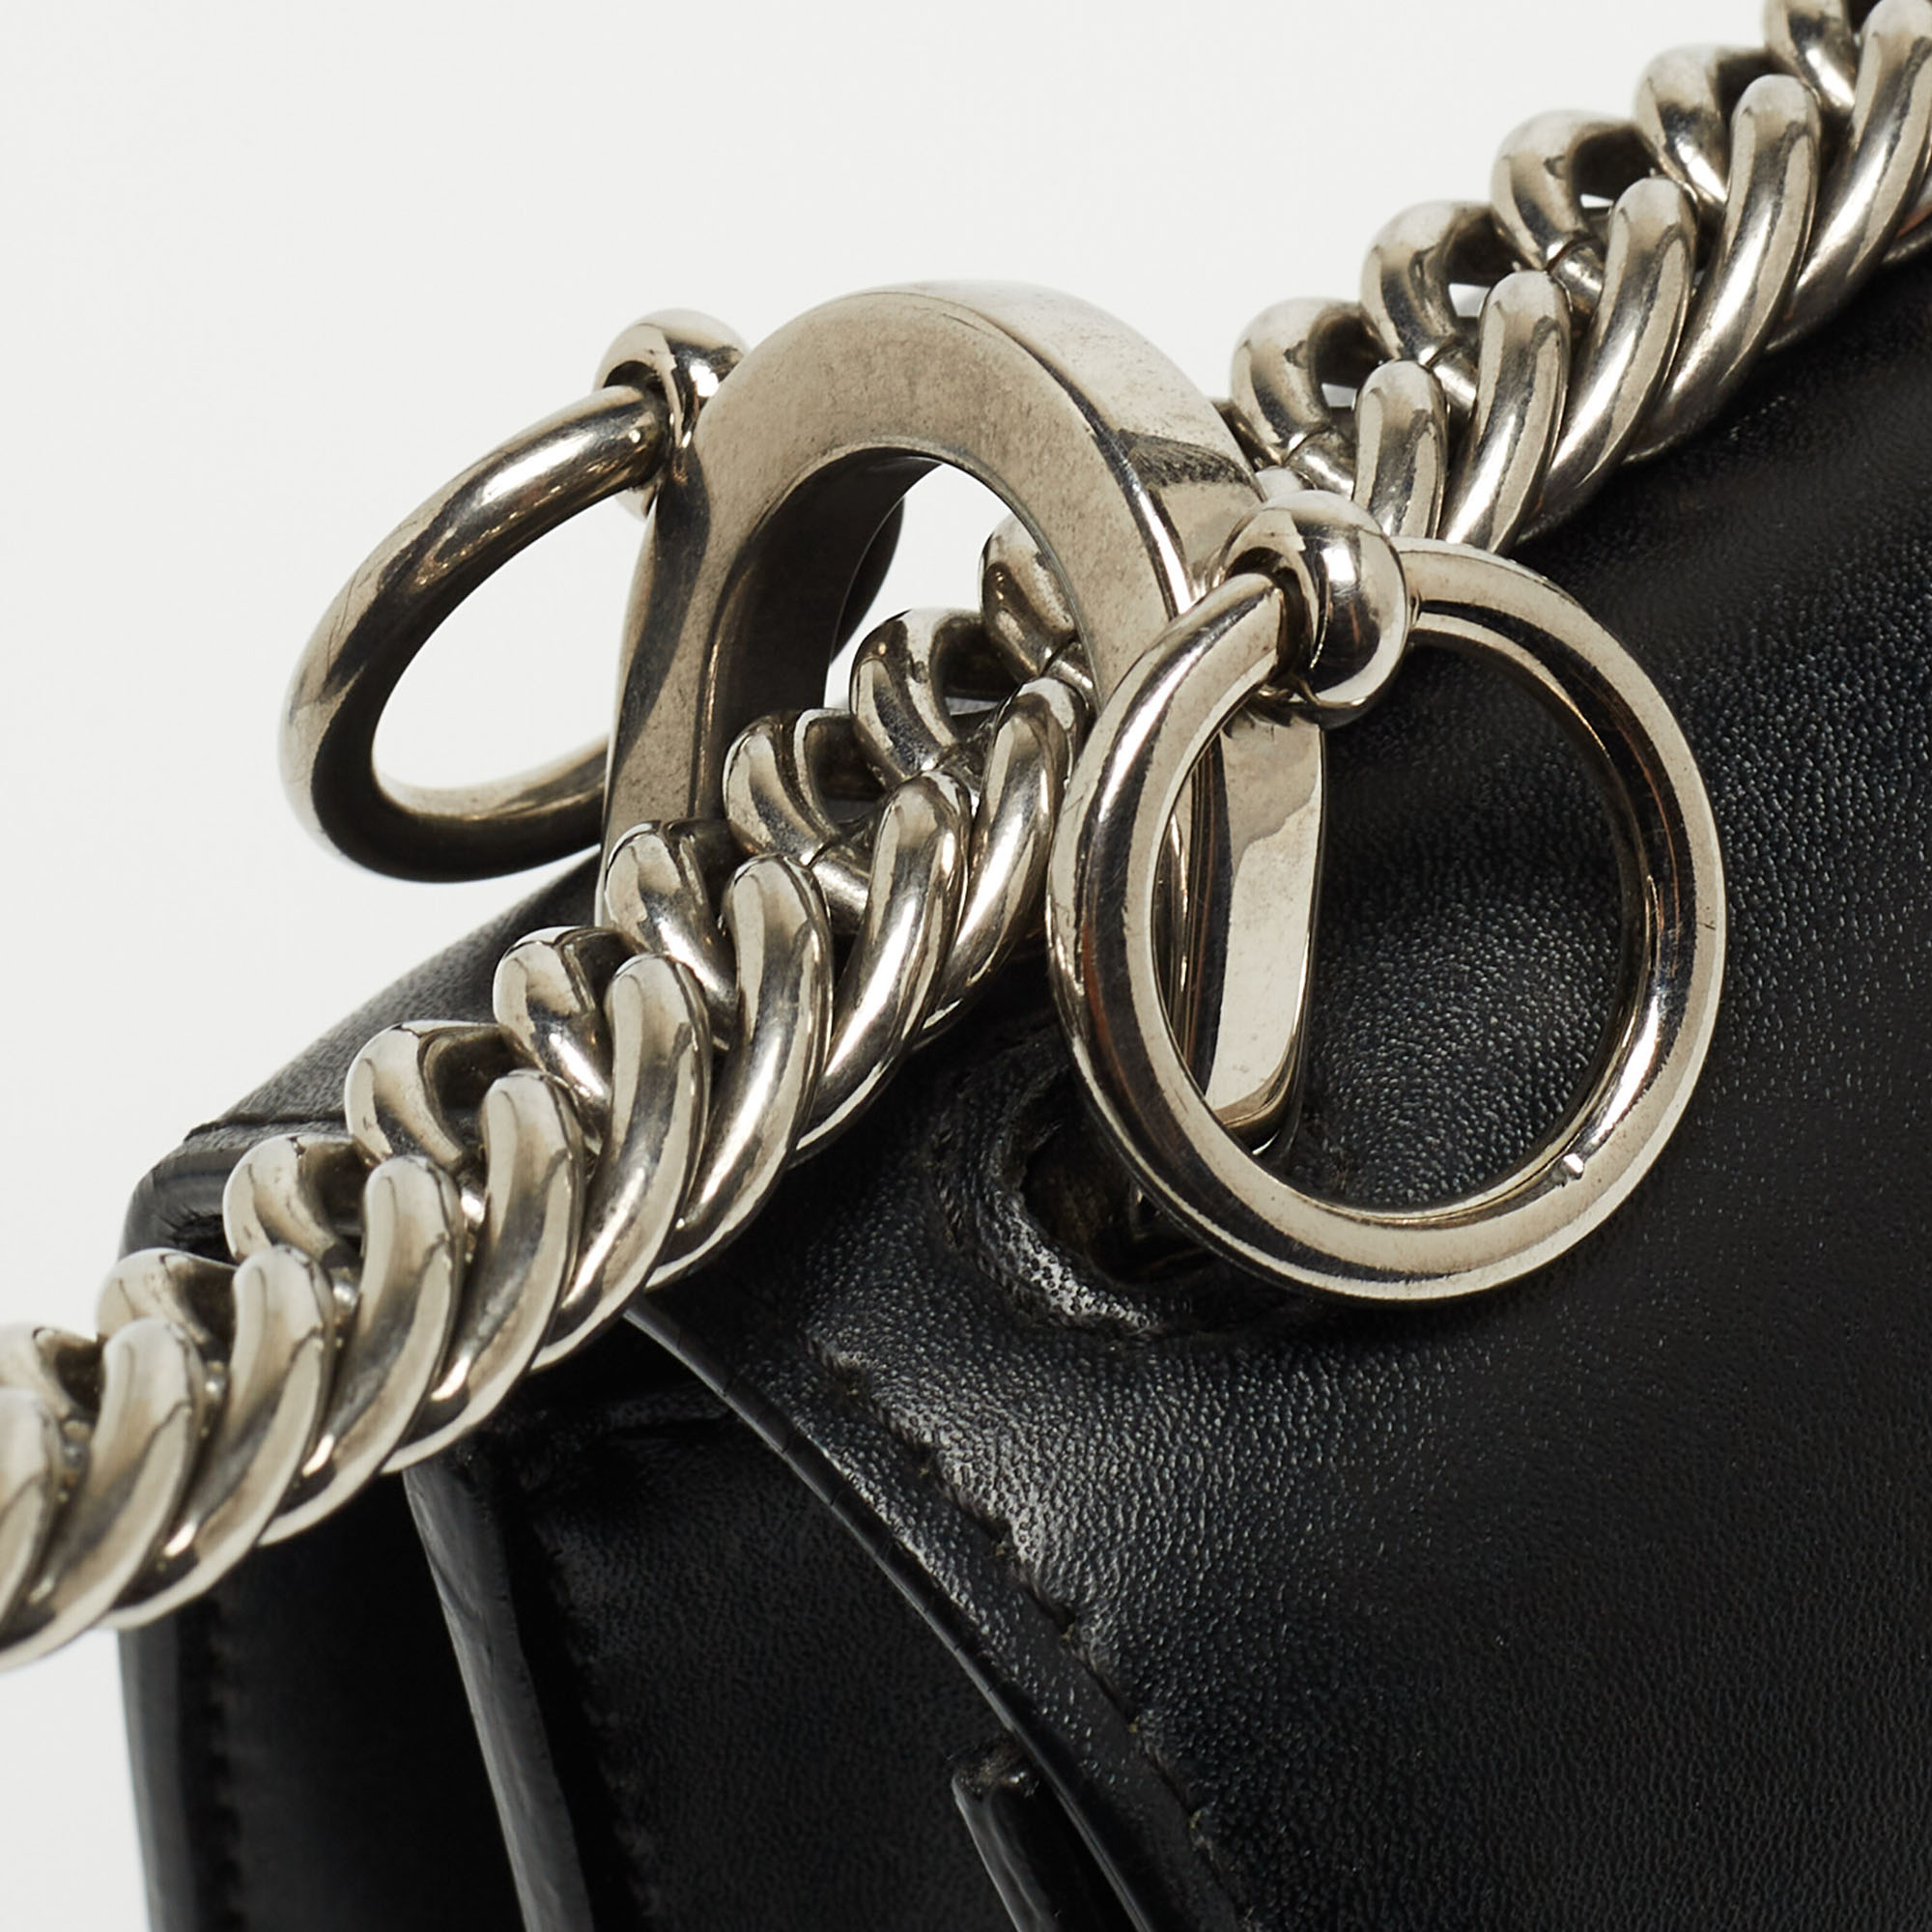 Fendi Black Leather Studded Mini Kan I Shoulder Bag